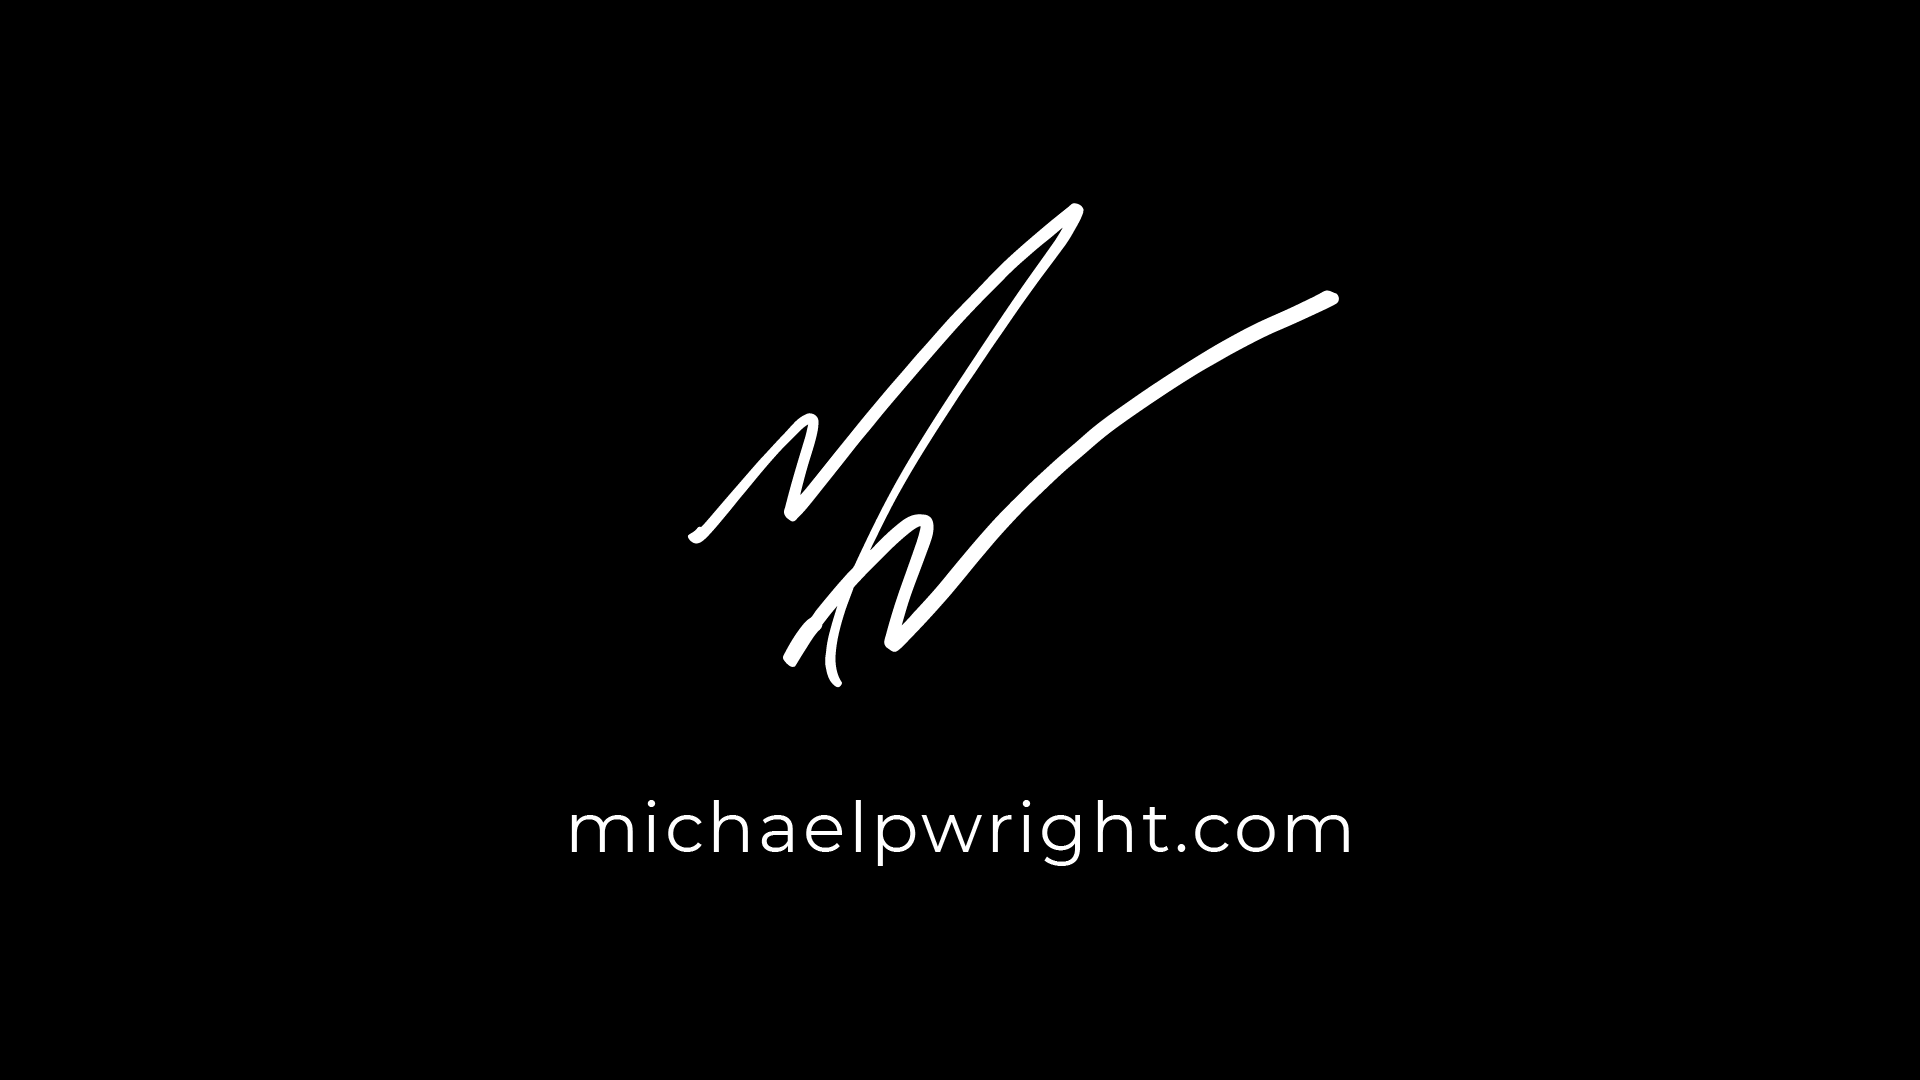 Michael P Wright michaelpwright.com michaelpwright